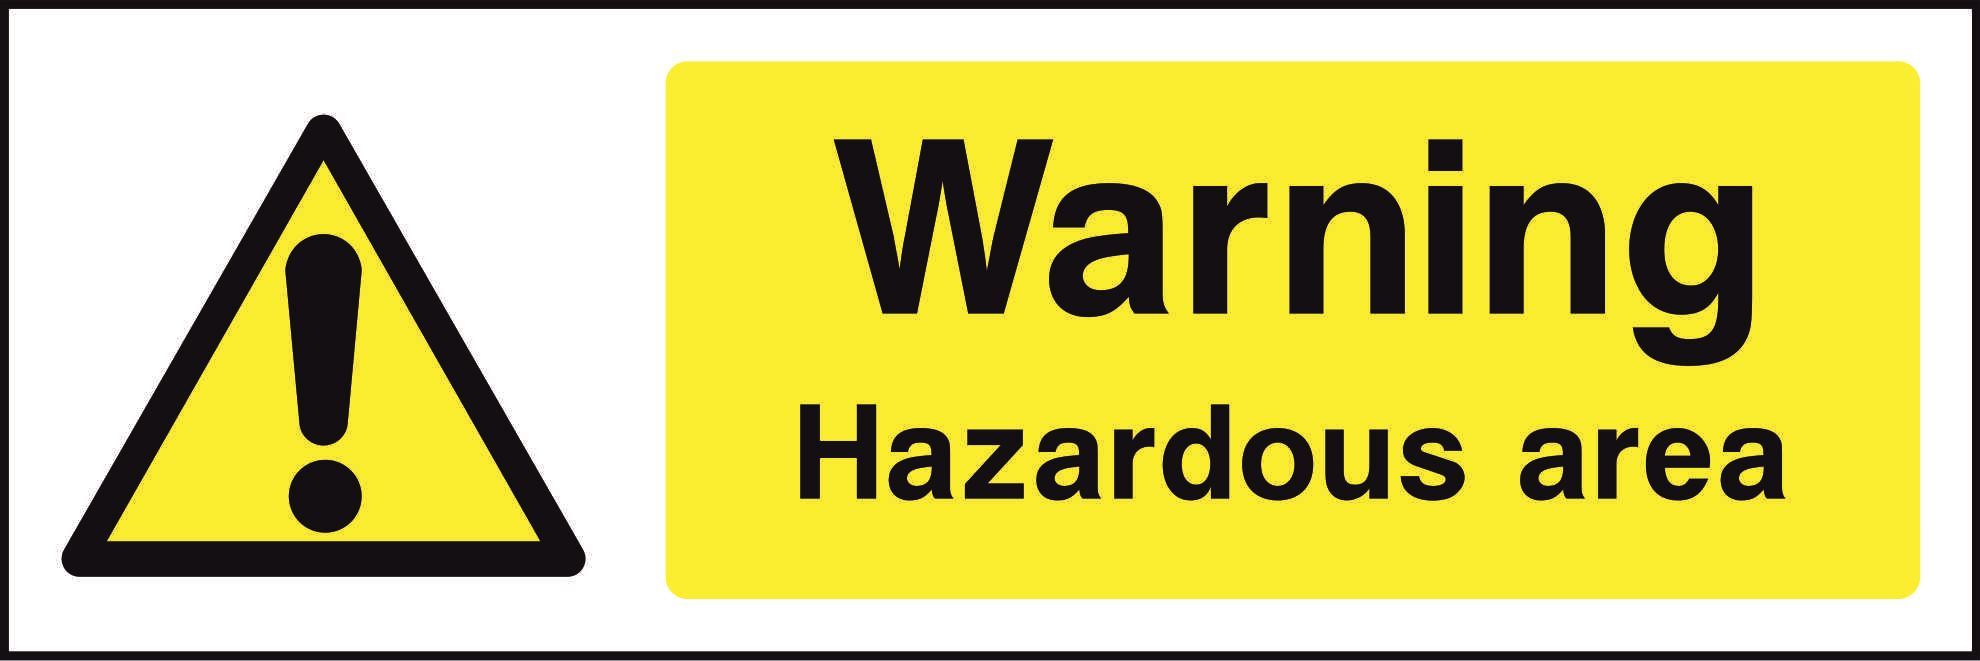 Warning Hazardous area